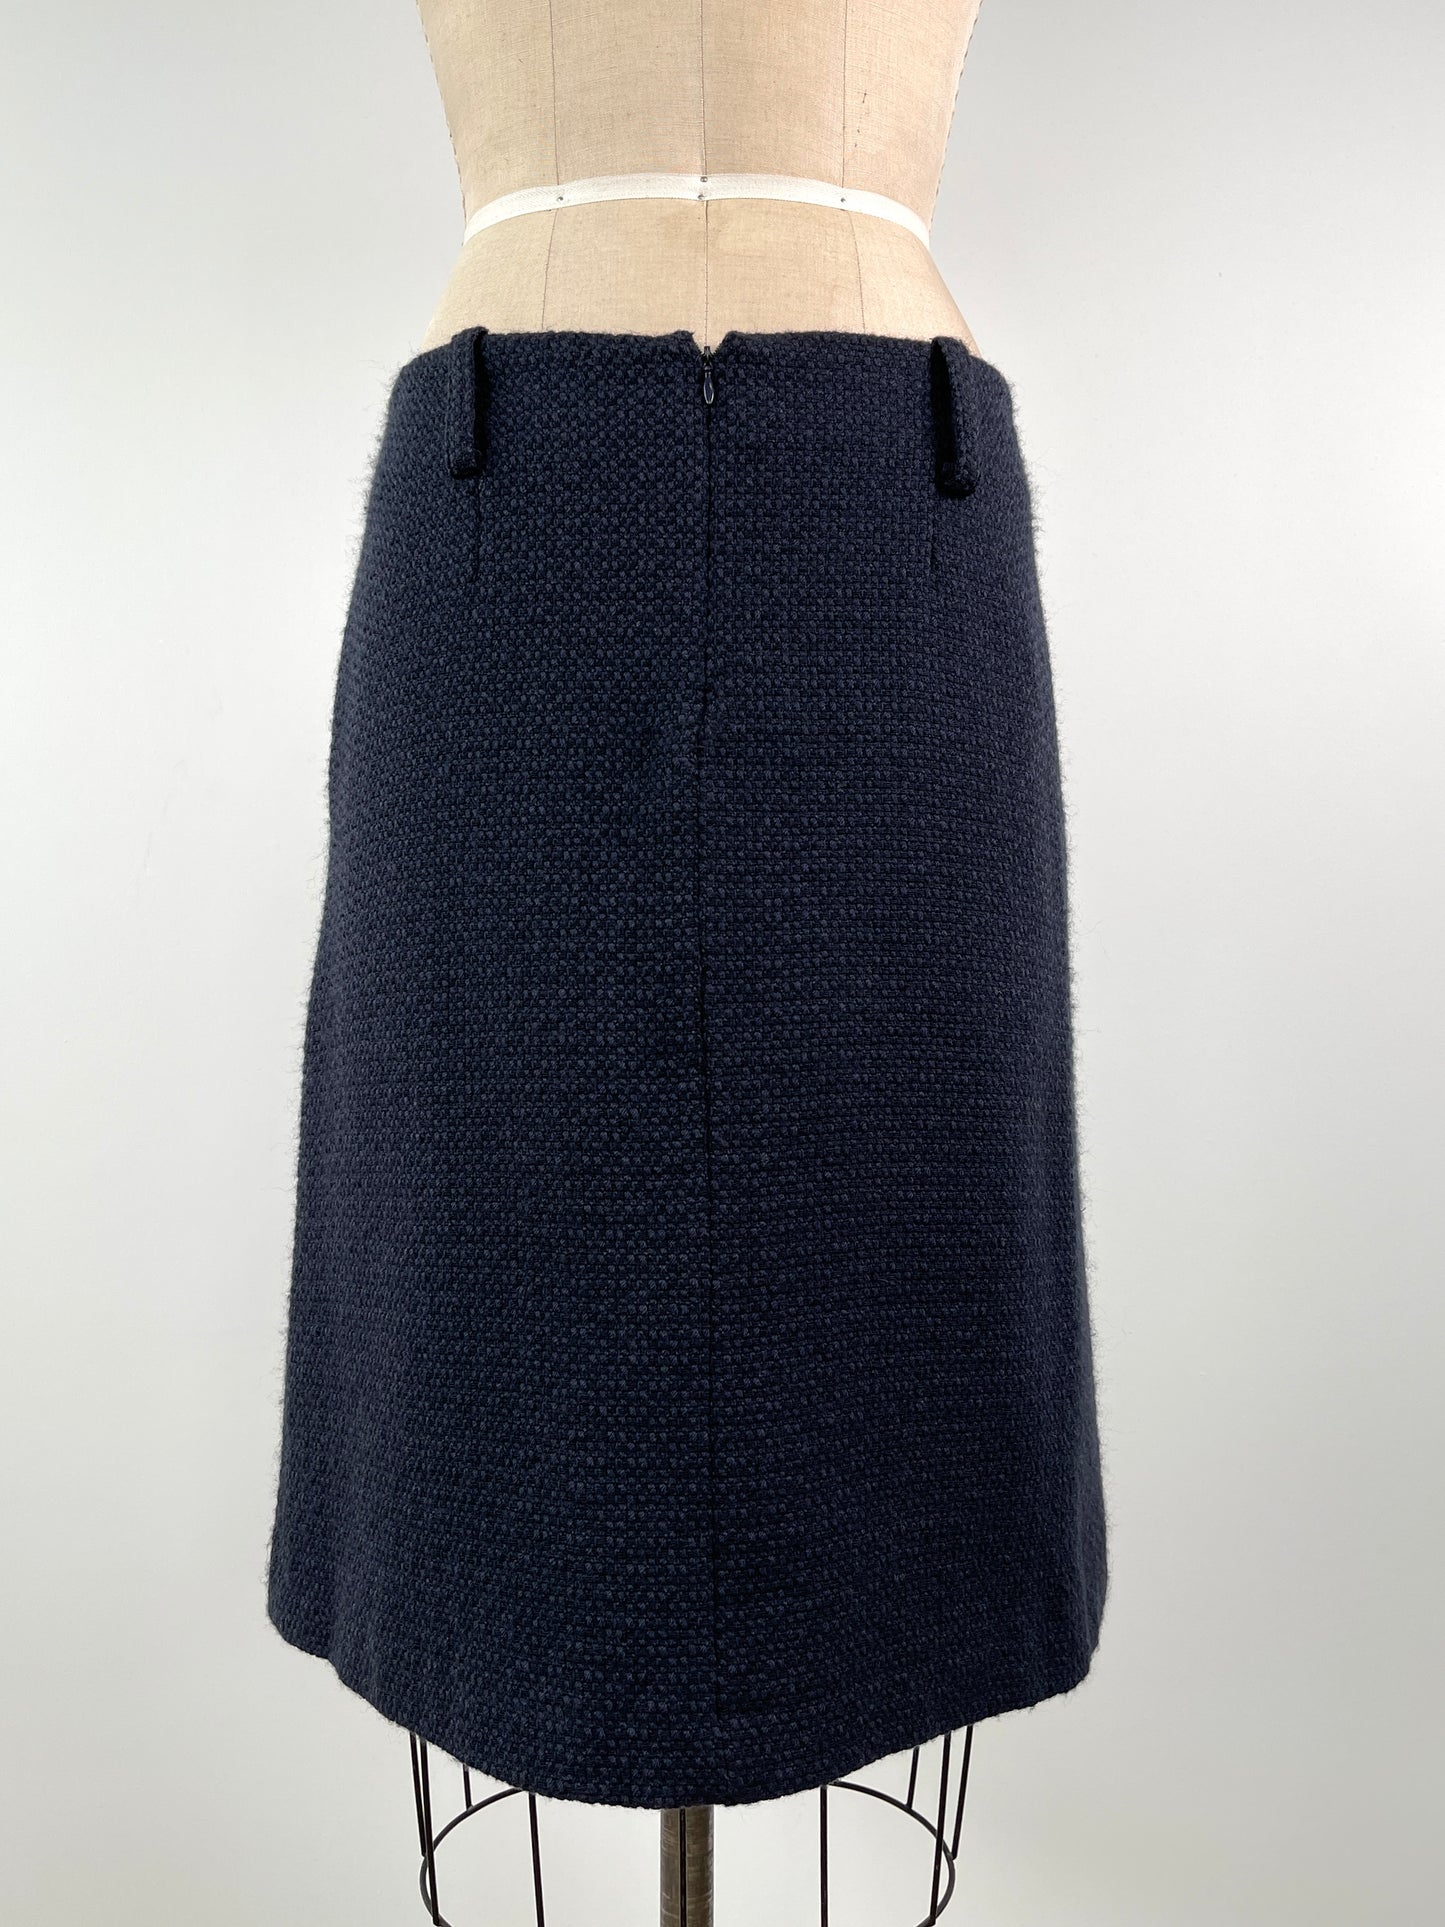 Jupe en laine texturée chiné marine et noir à poches (M)